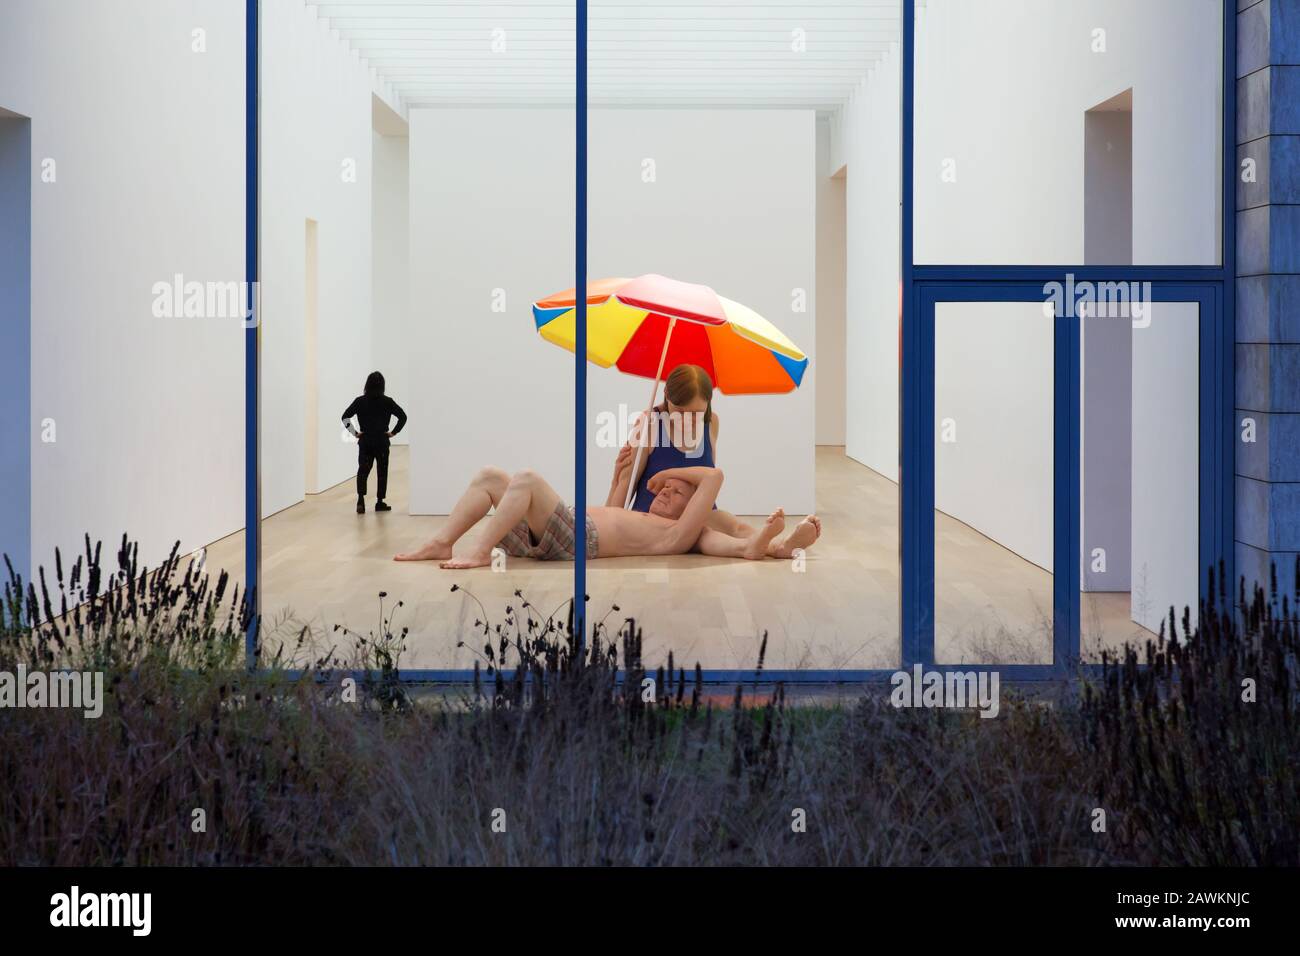 WASSENAAR - Couple under umbrella by Ron Mueck at the museum Voorlinden Stock Photo